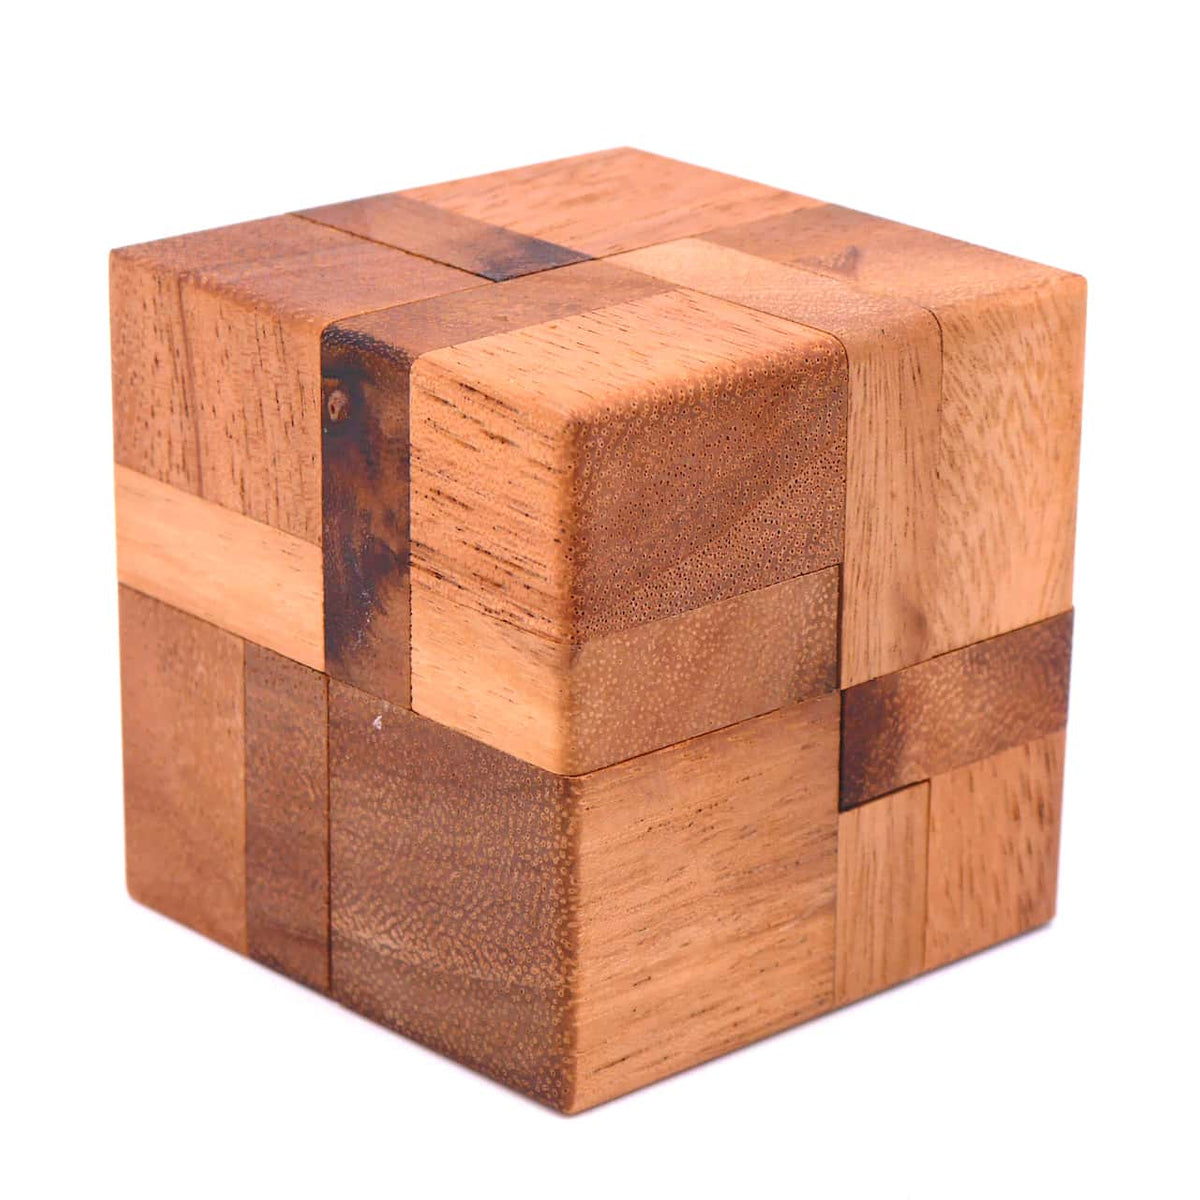 Das zusammengesetzte Denkspiel aus Holz mit 6 Teilen.